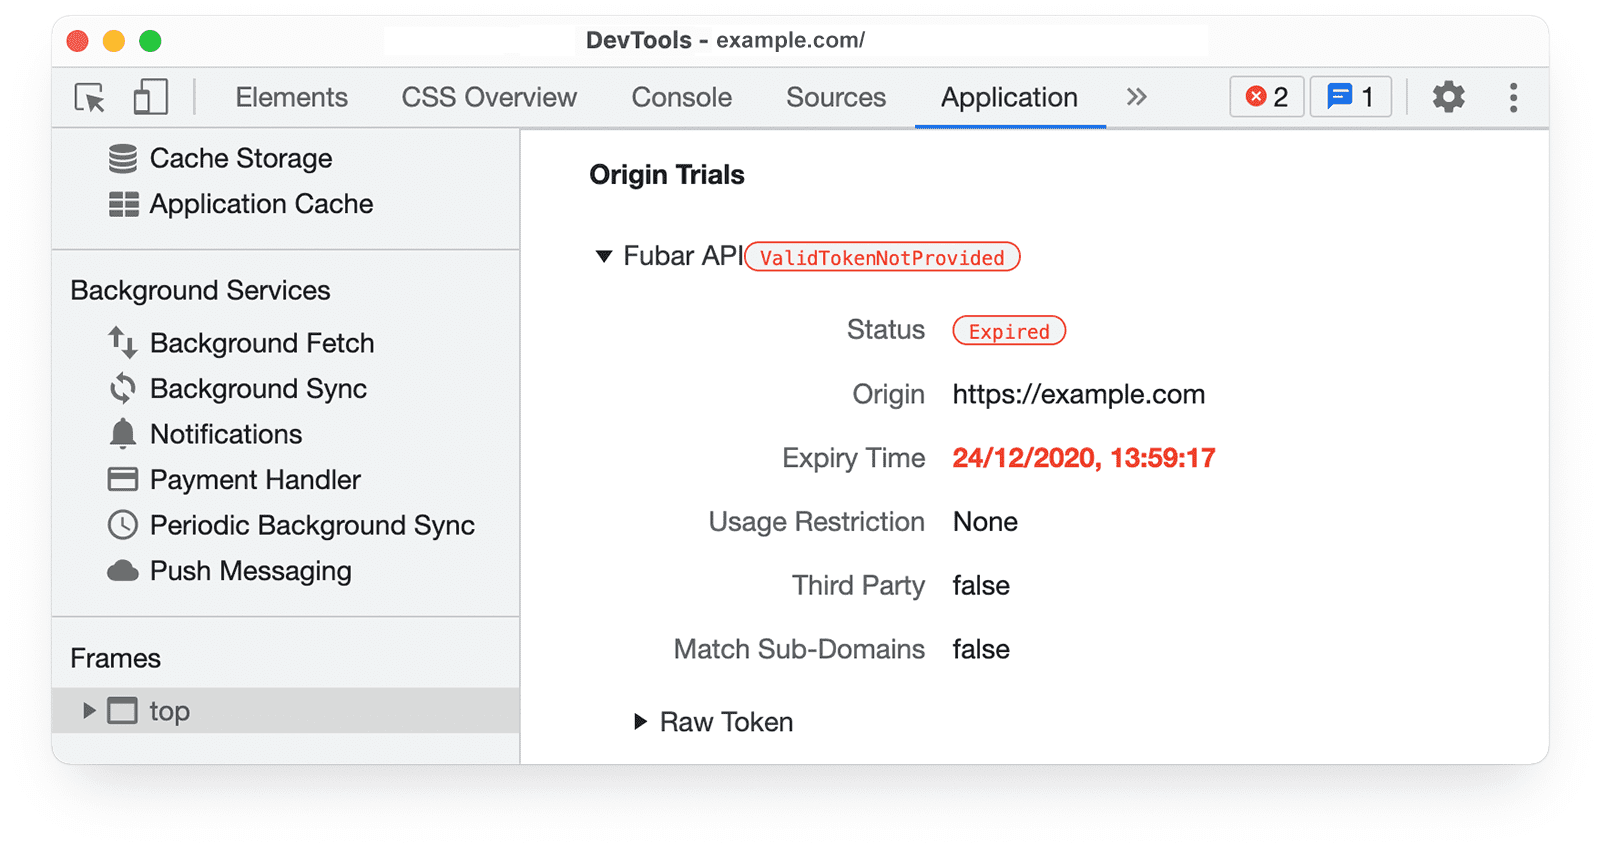 Chrome DevTools
के ऑरिजिन ट्रायल की जानकारी, ऐप्लिकेशन पैनल में मान्य है. इसमें यह जानकारी दिख रही है कि डिसप्ले के तौर पर इसे बनाया गया है या नहीं और इसके स्टेटस की समयसीमा खत्म हो गई है